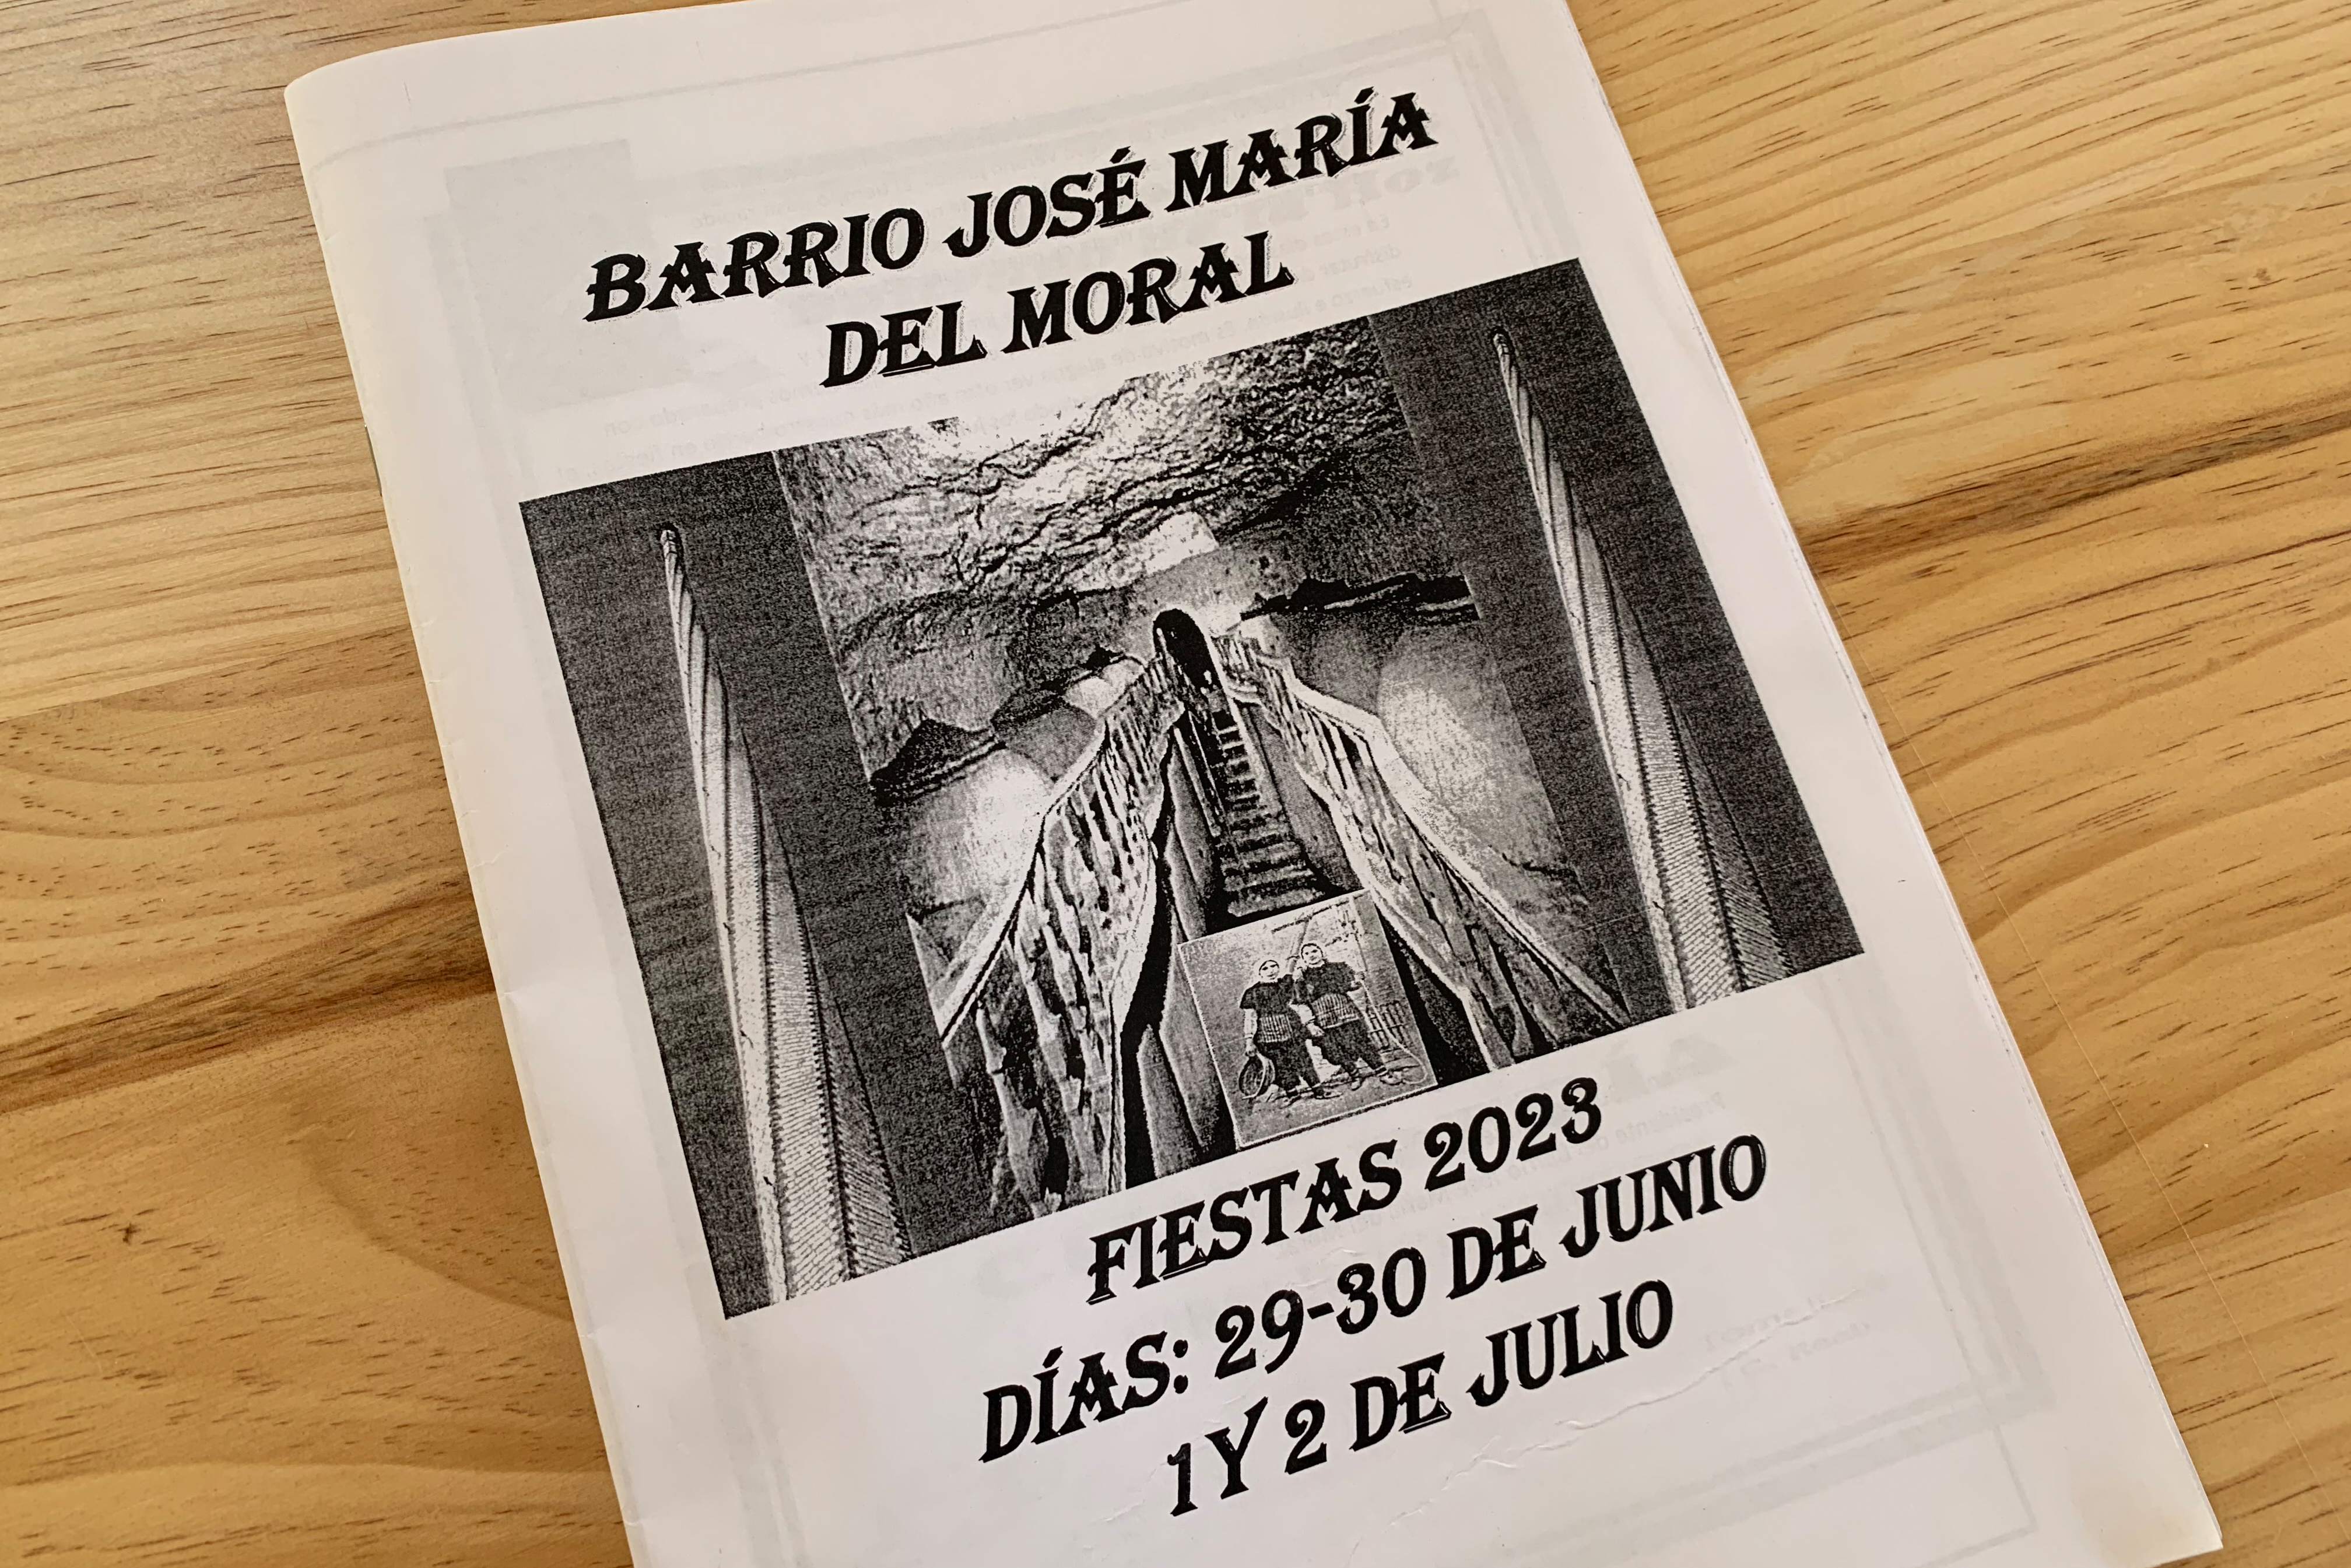 El barrio José María del Moral celebra este fin de semana sus fiestas 2023
